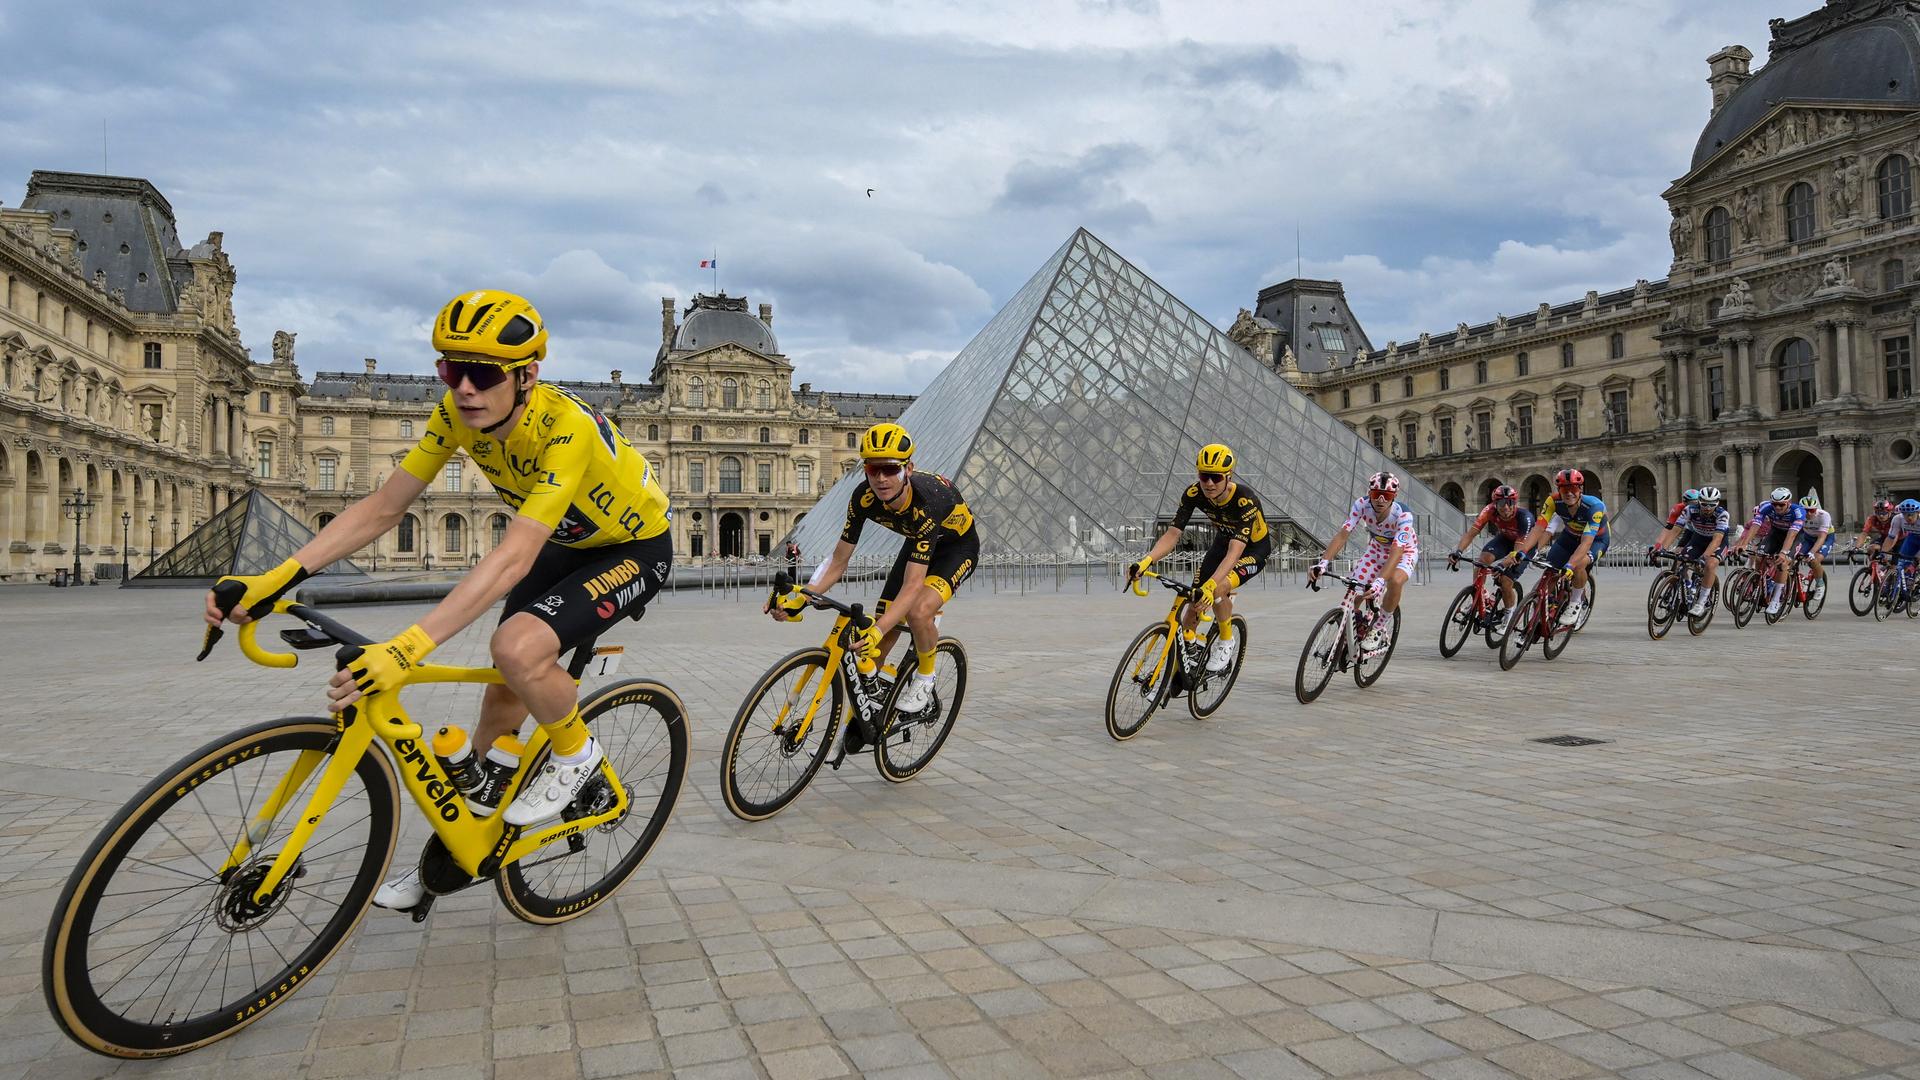 Tour de France-Sieger Jonas Vingegaard im gelben Trikot vor dem Louvre in Paris. Hinter ihm folgen einige andere Radfahrer.